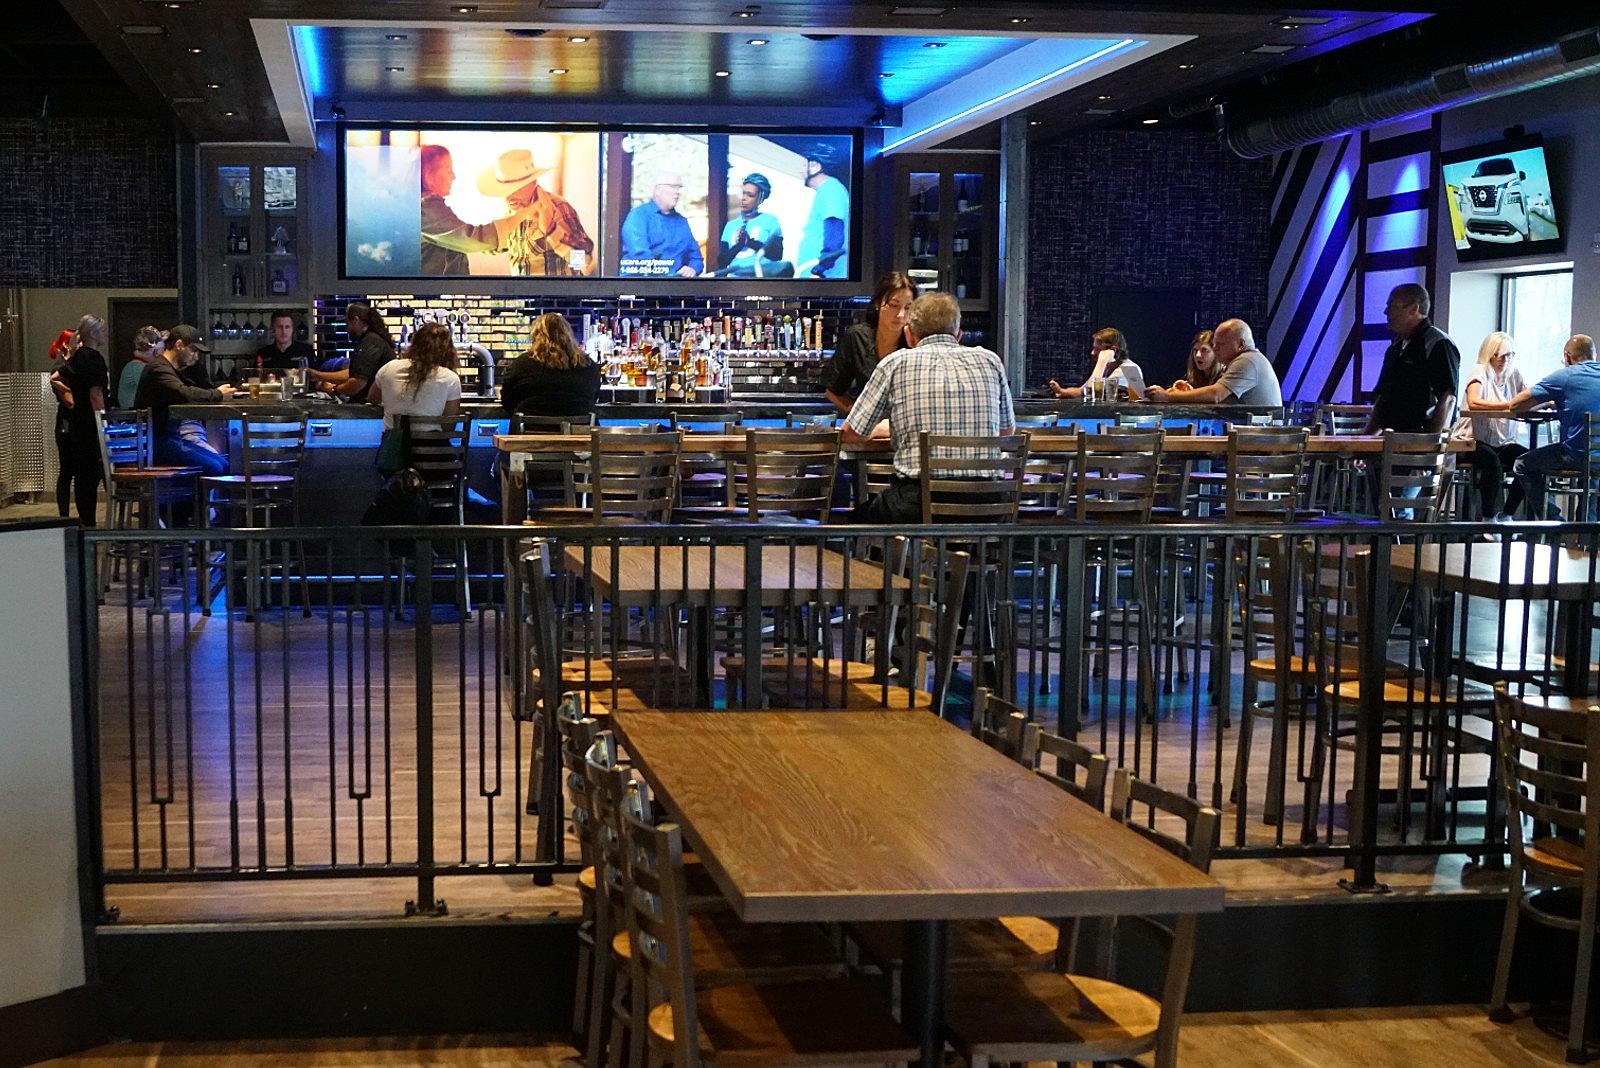 Legends Bar and Grill Restaurant - Saint Cloud, MN